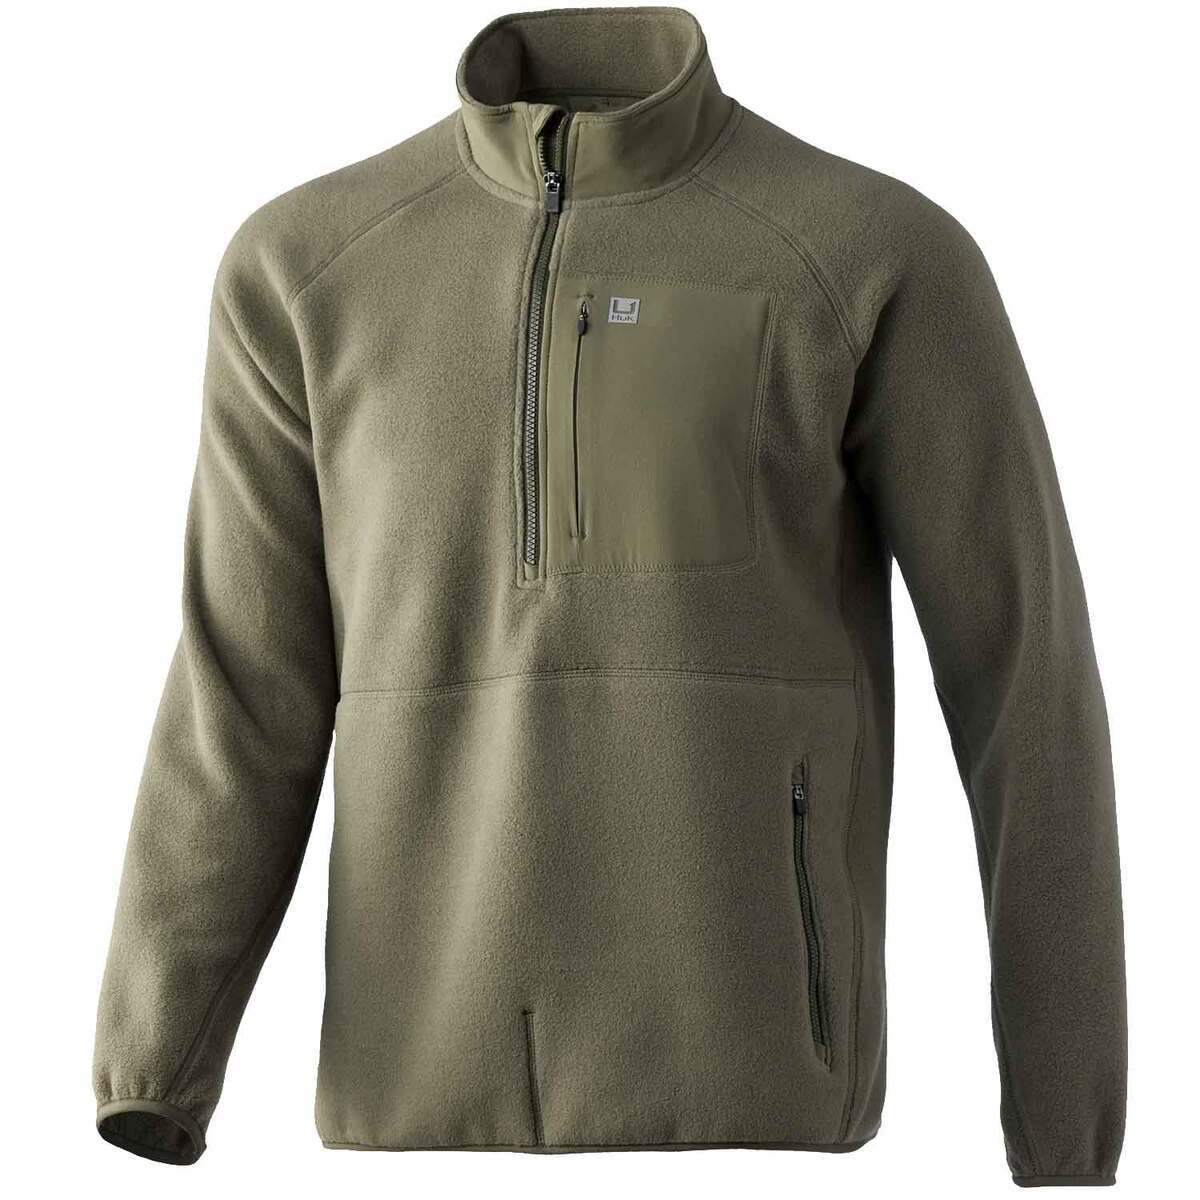 Huk Men's Waypoint Fleece Half Zip Fishing Jacket | Sportsman's Warehouse